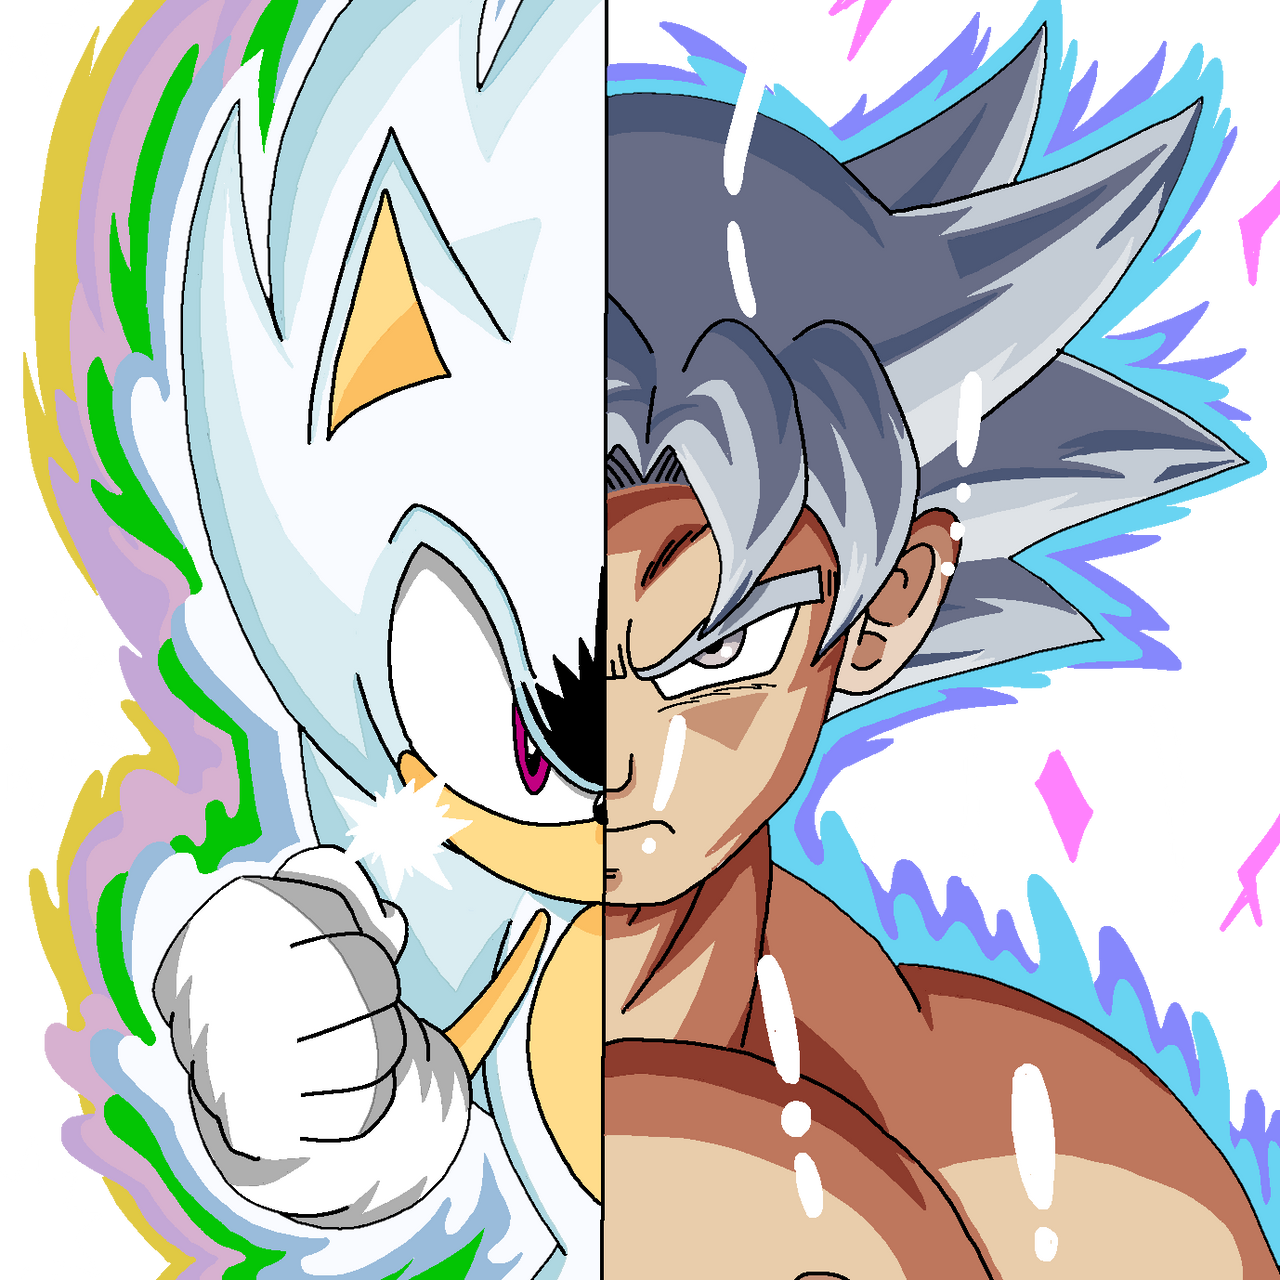 MUI Goku vs hyper sonic #dbz #dbgt #edits #foryou #fy #fyp #fypシ #real